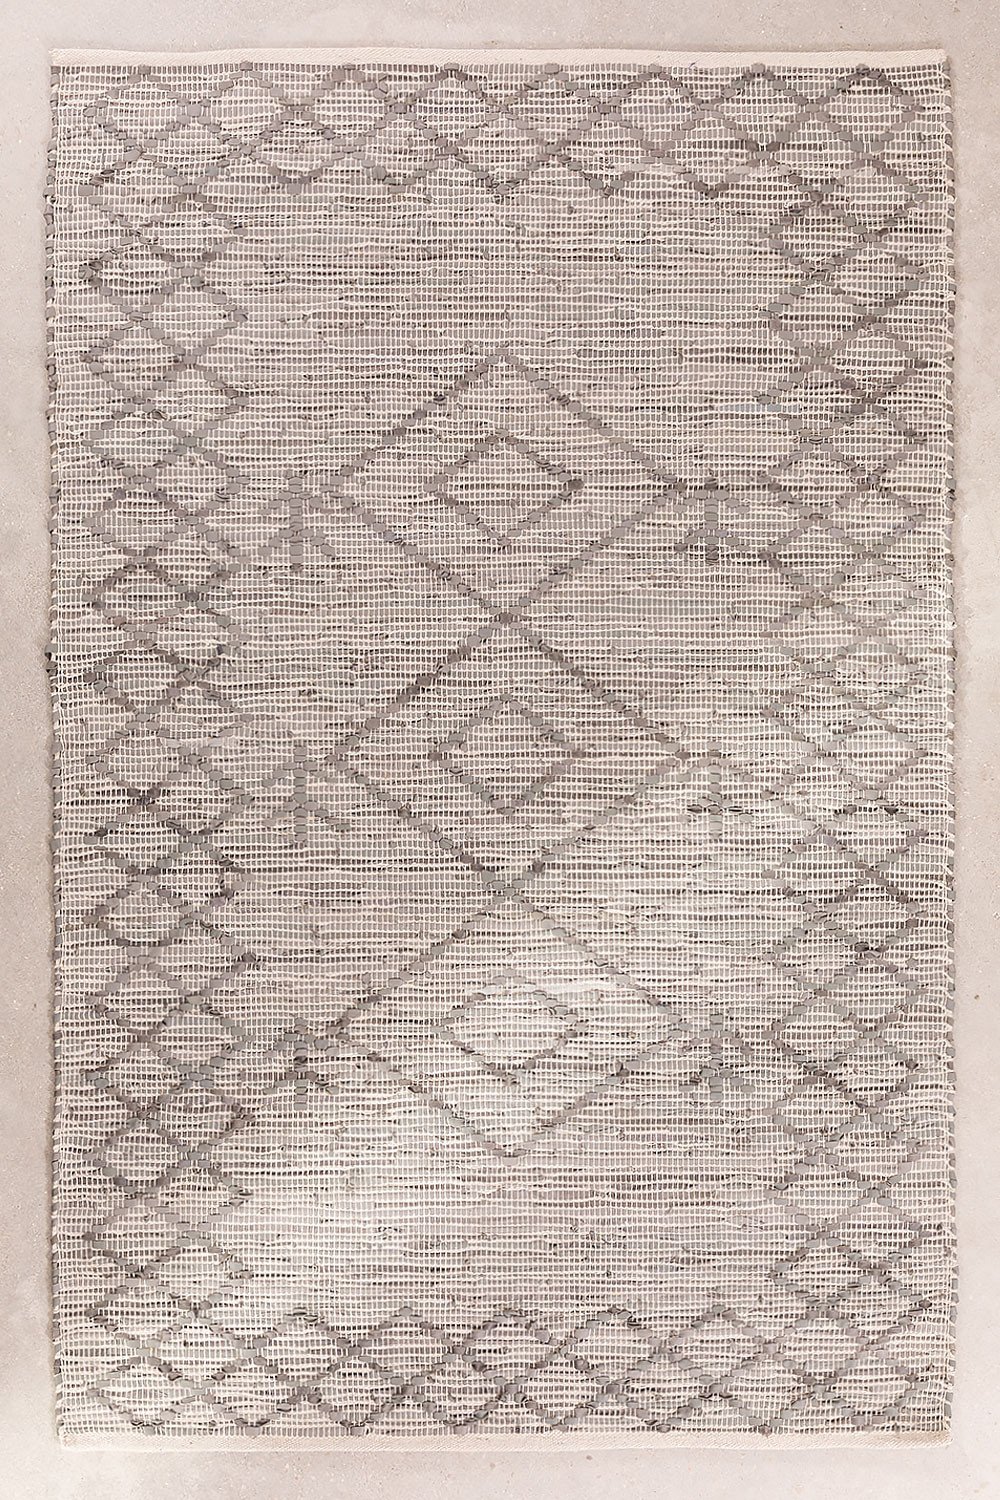 Katoenen vloerkleed (120x185 cm) Frika, galerij beeld 1